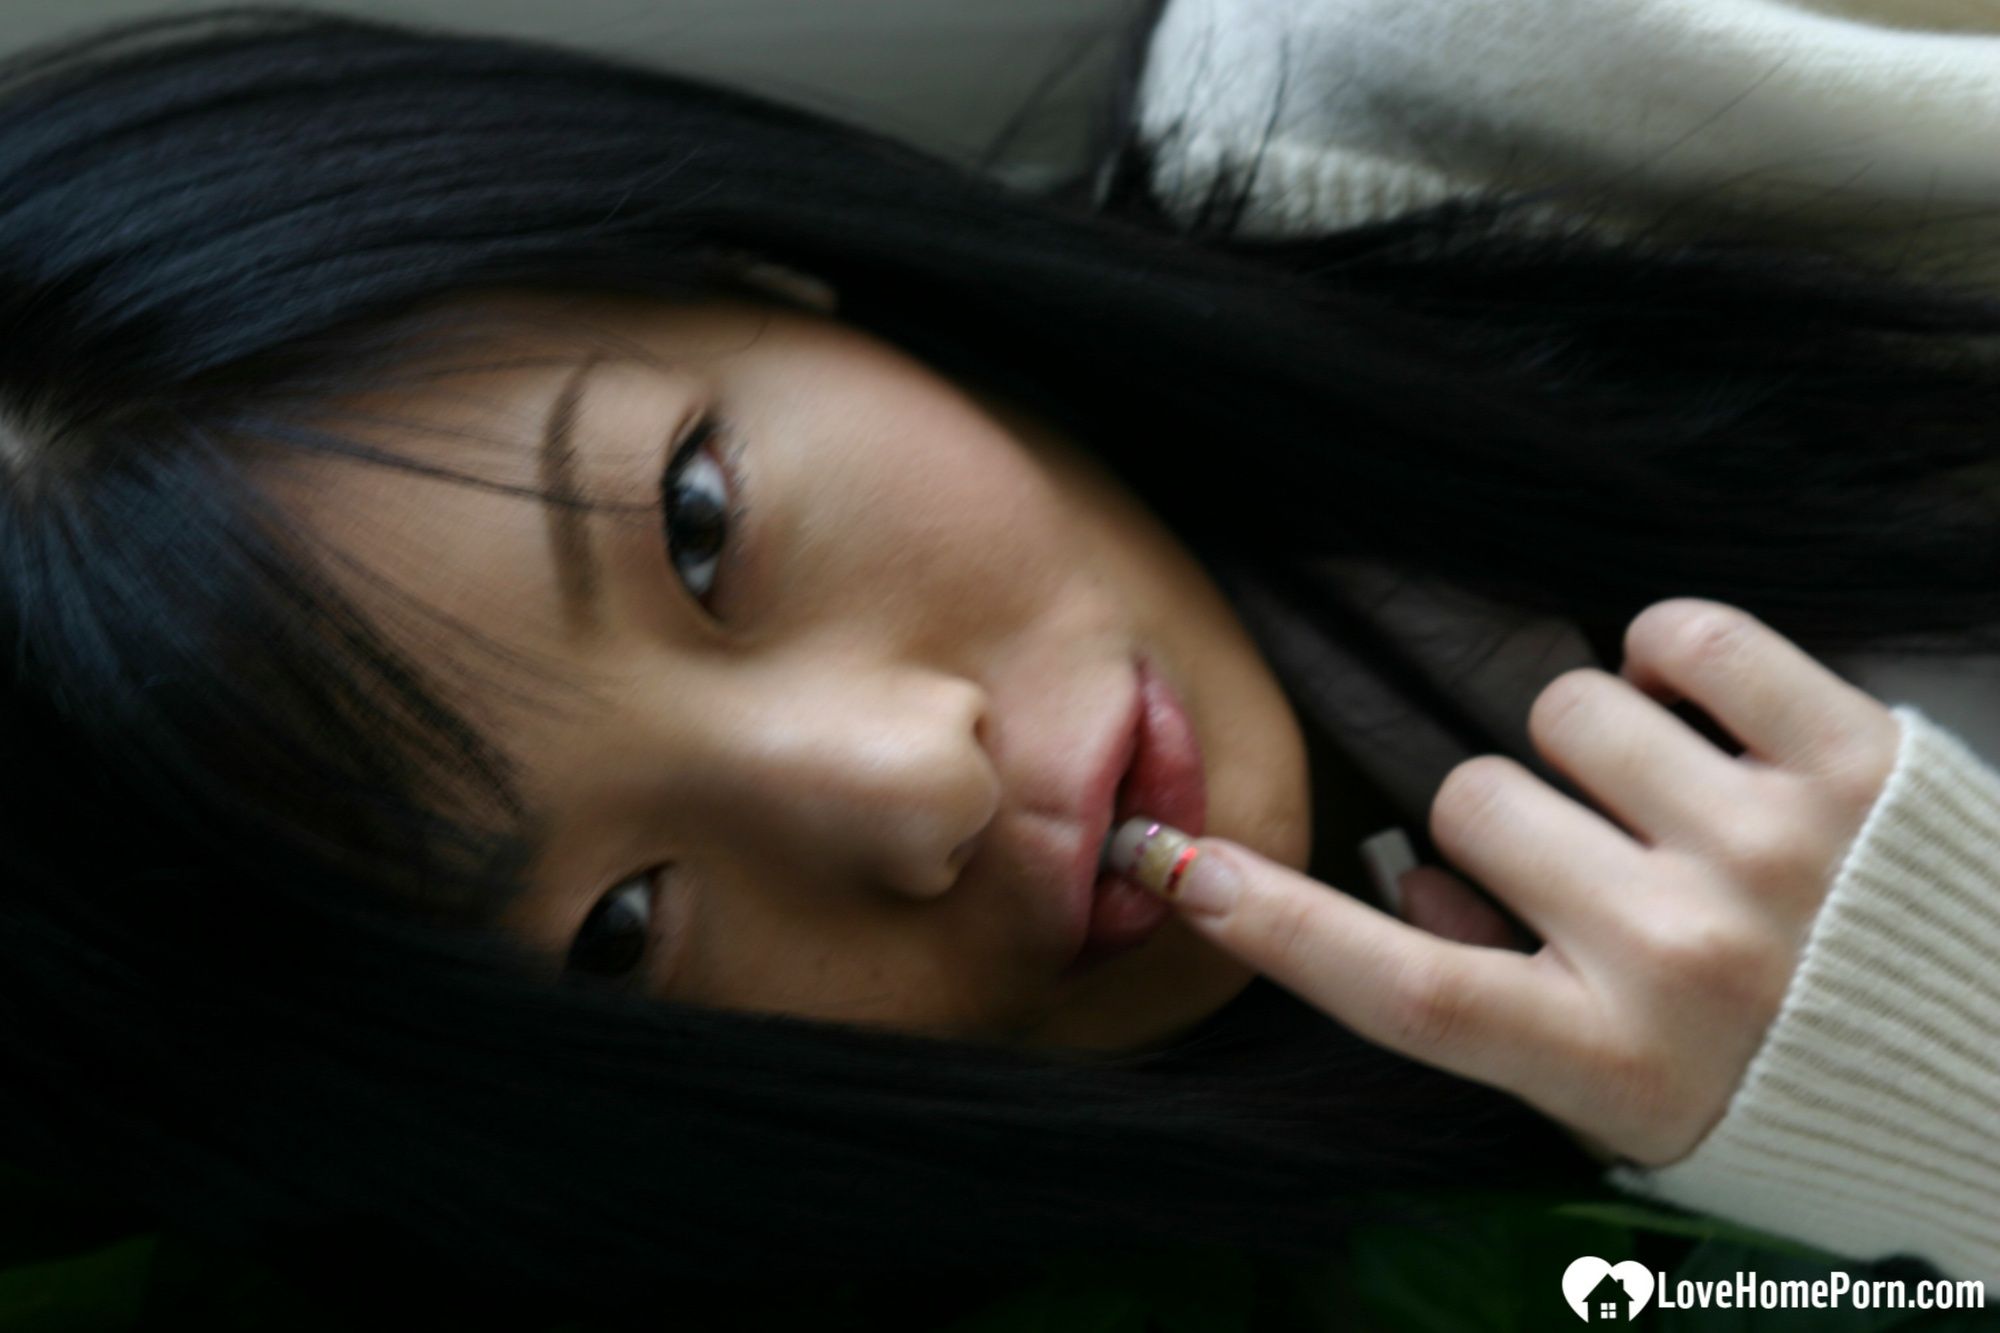 Asian schoolgirl looks for some online exposure #19